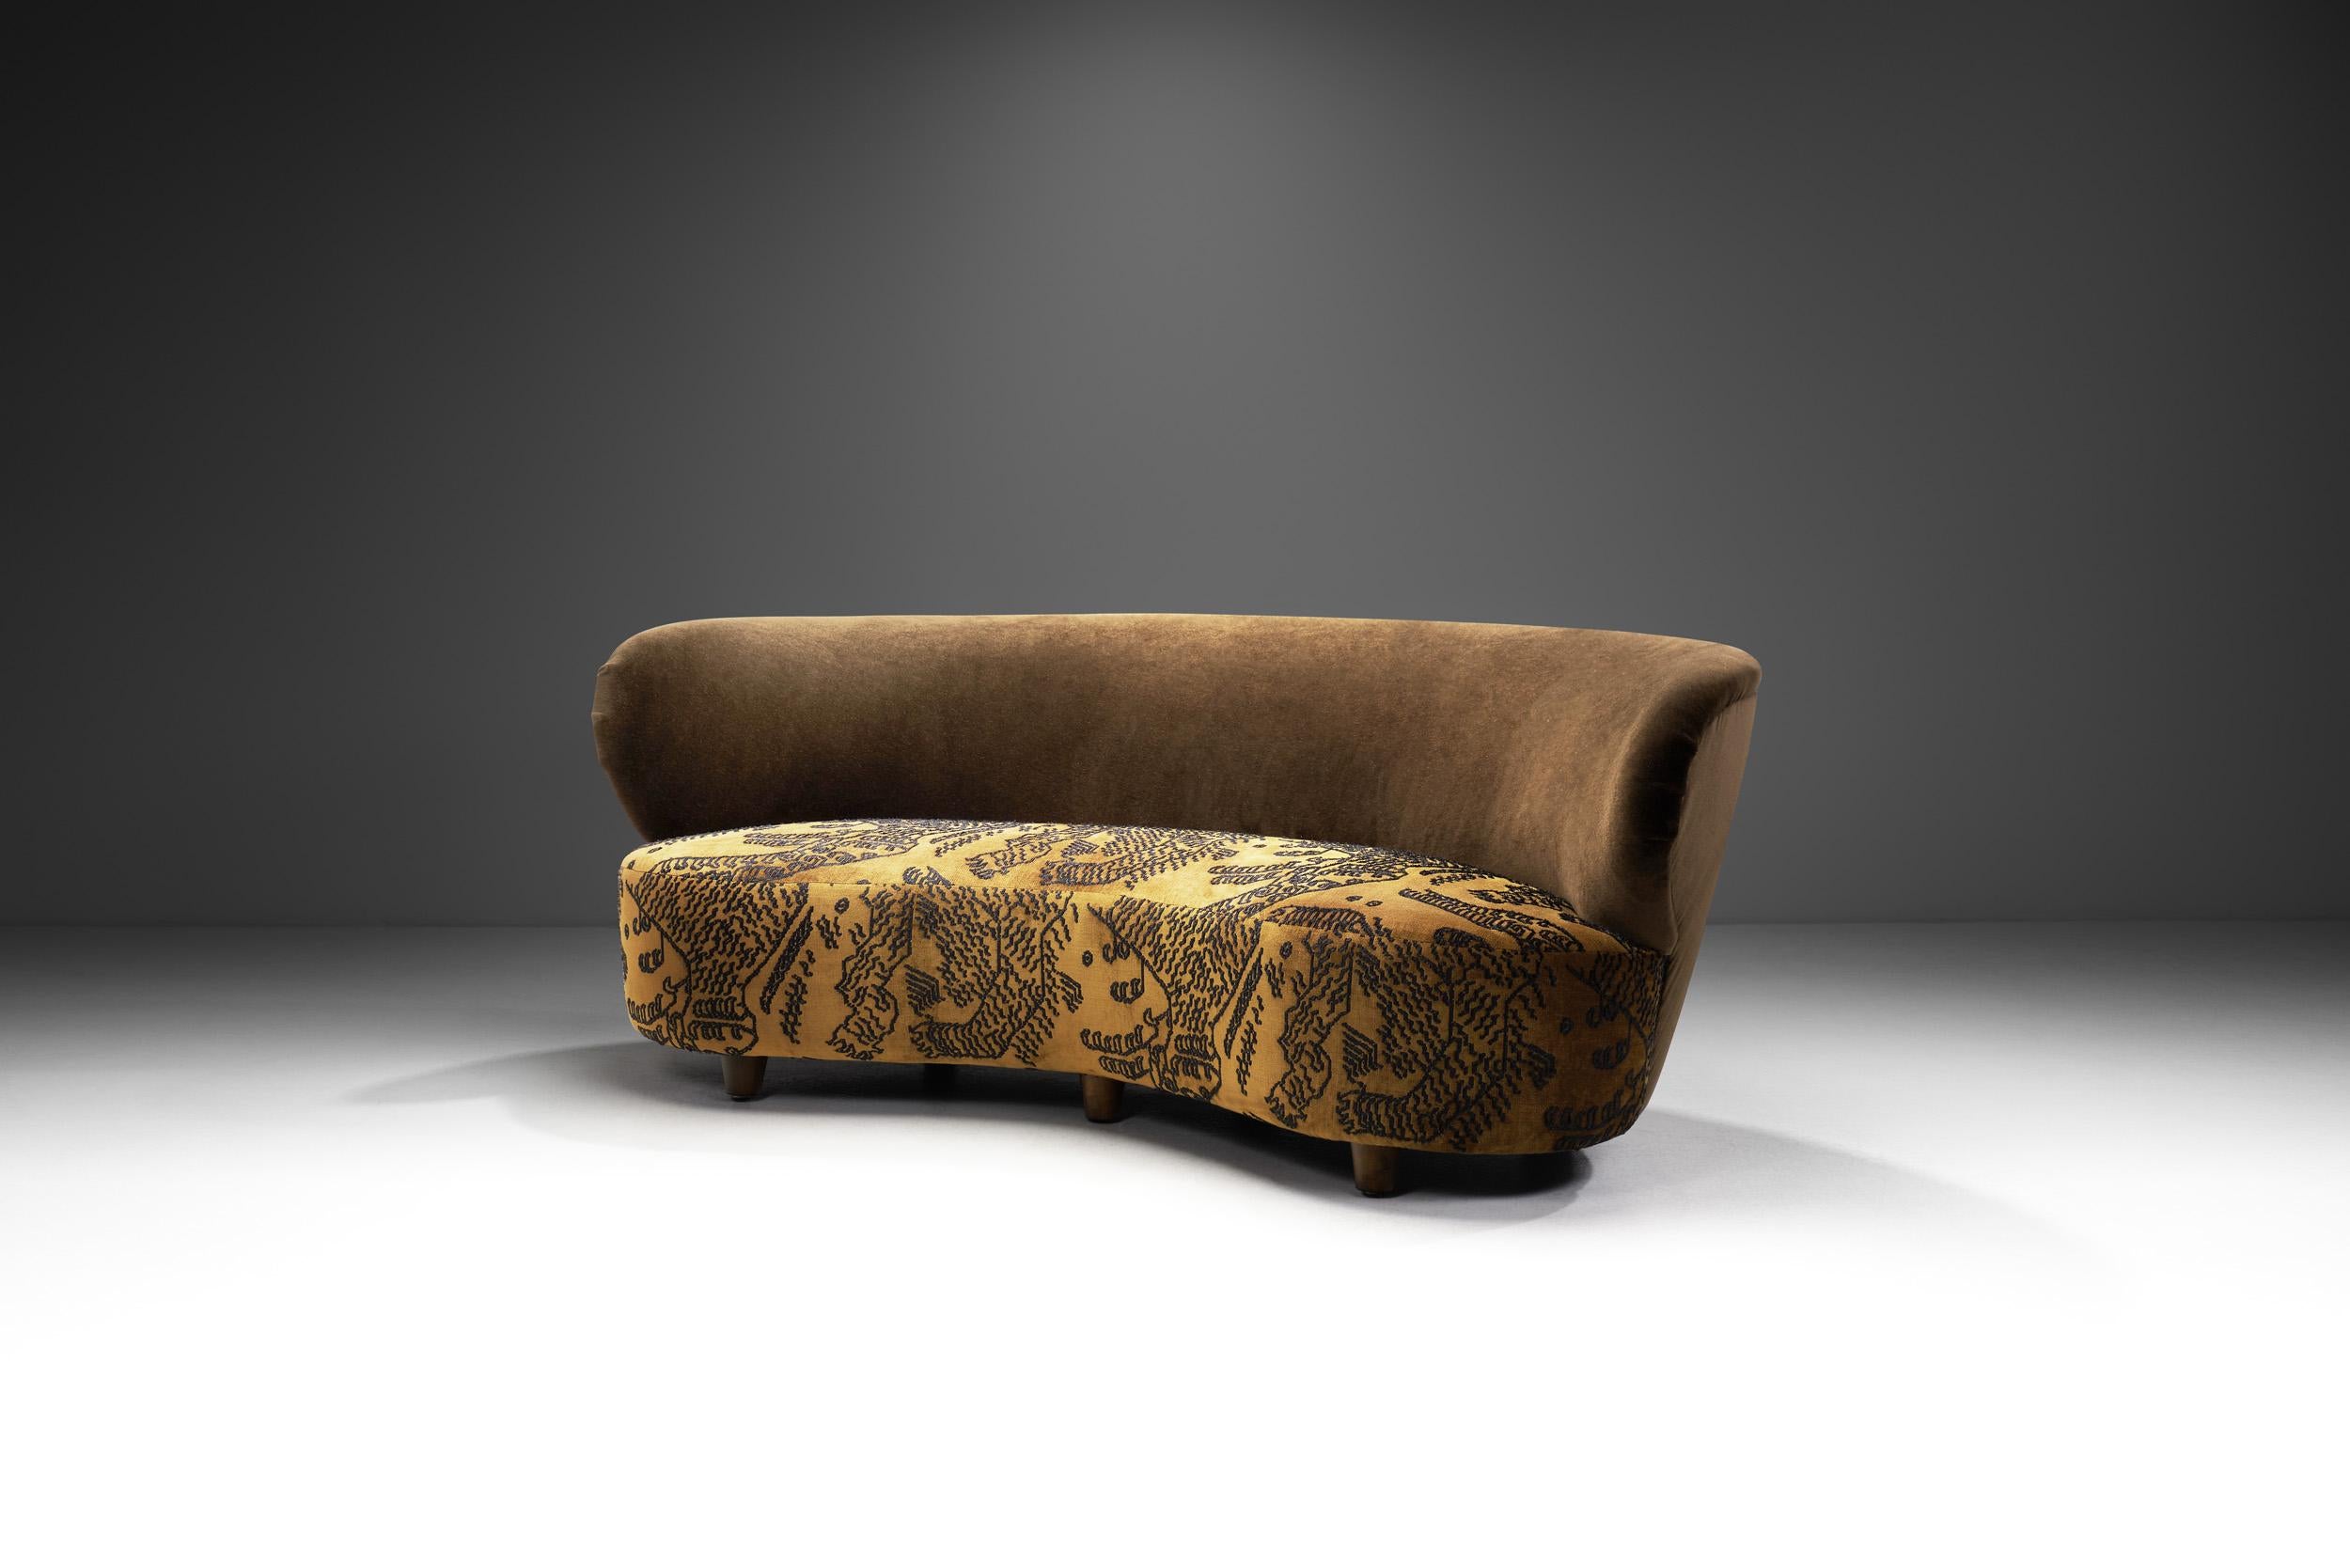 Dieses außergewöhnliche Dreisitzer-Sofa ist auf die bestmögliche Weise exzentrisch: mit einem großen, geschwungenen Korpus und einer einzigartigen Polsterung, die beide an den Art-déco-Stil der 1930er Jahre erinnern, aber auch die erkennbaren